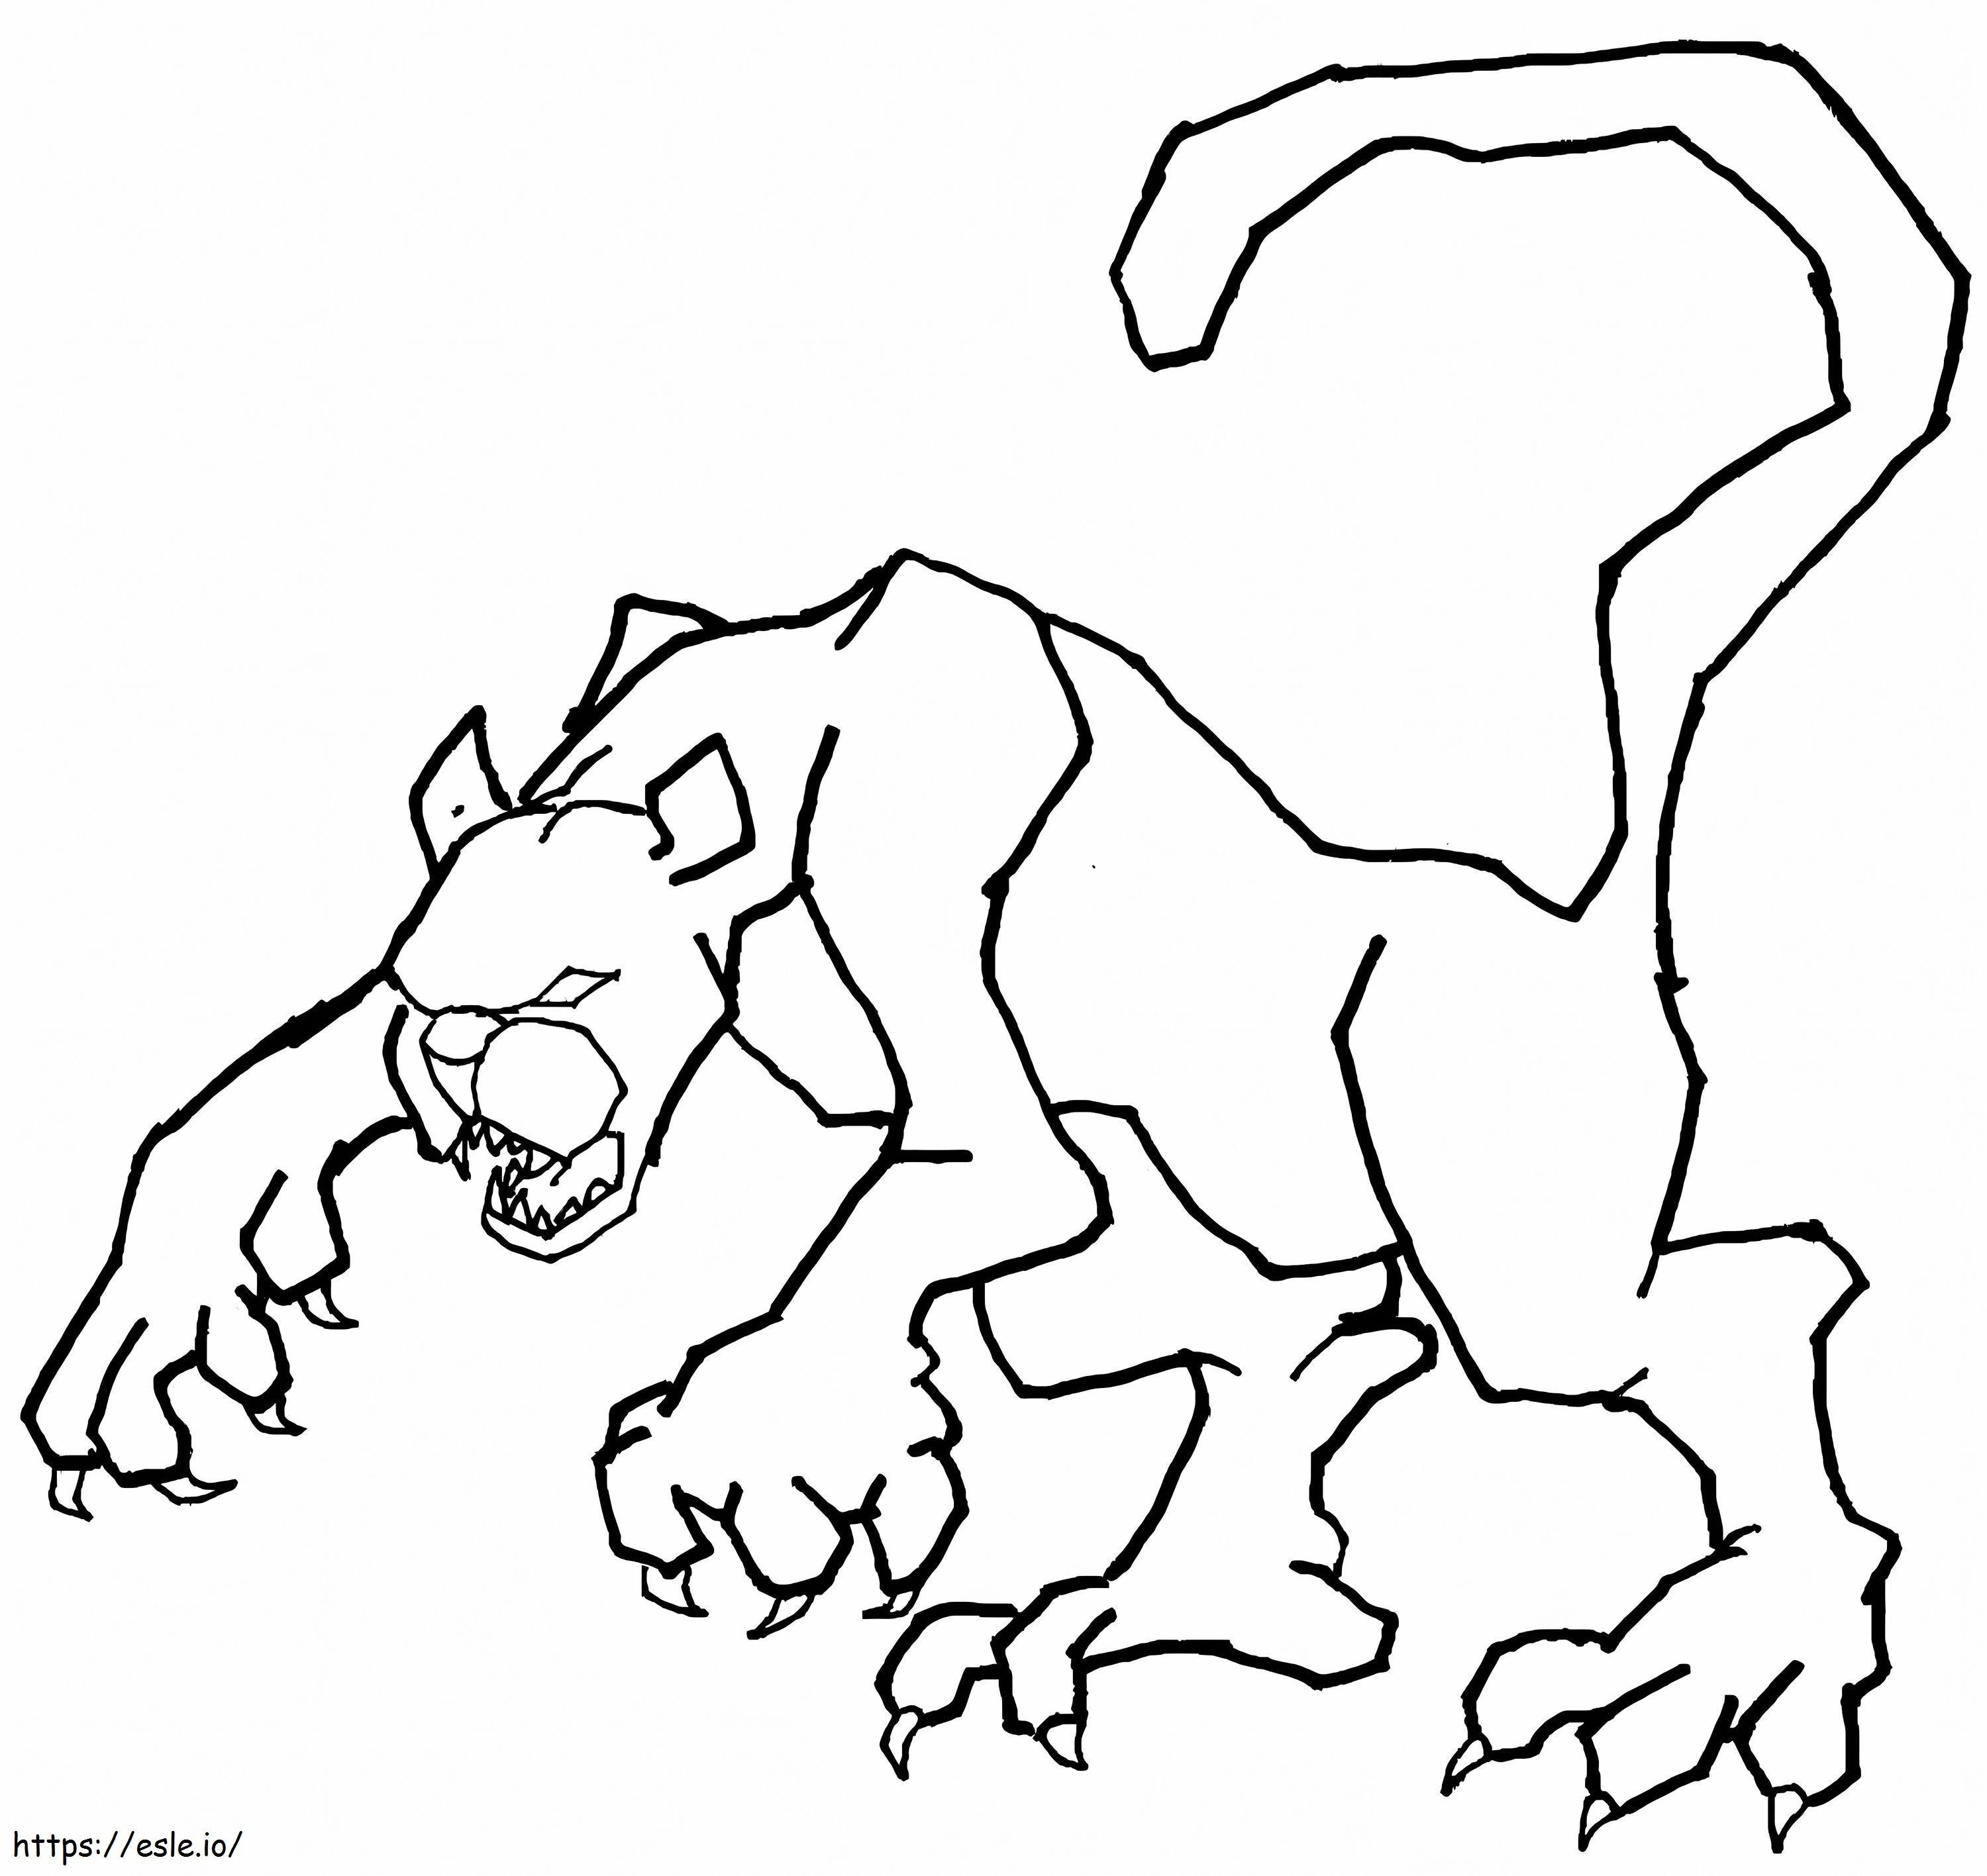 Gruselige Cougar-Zeichnung ausmalbilder